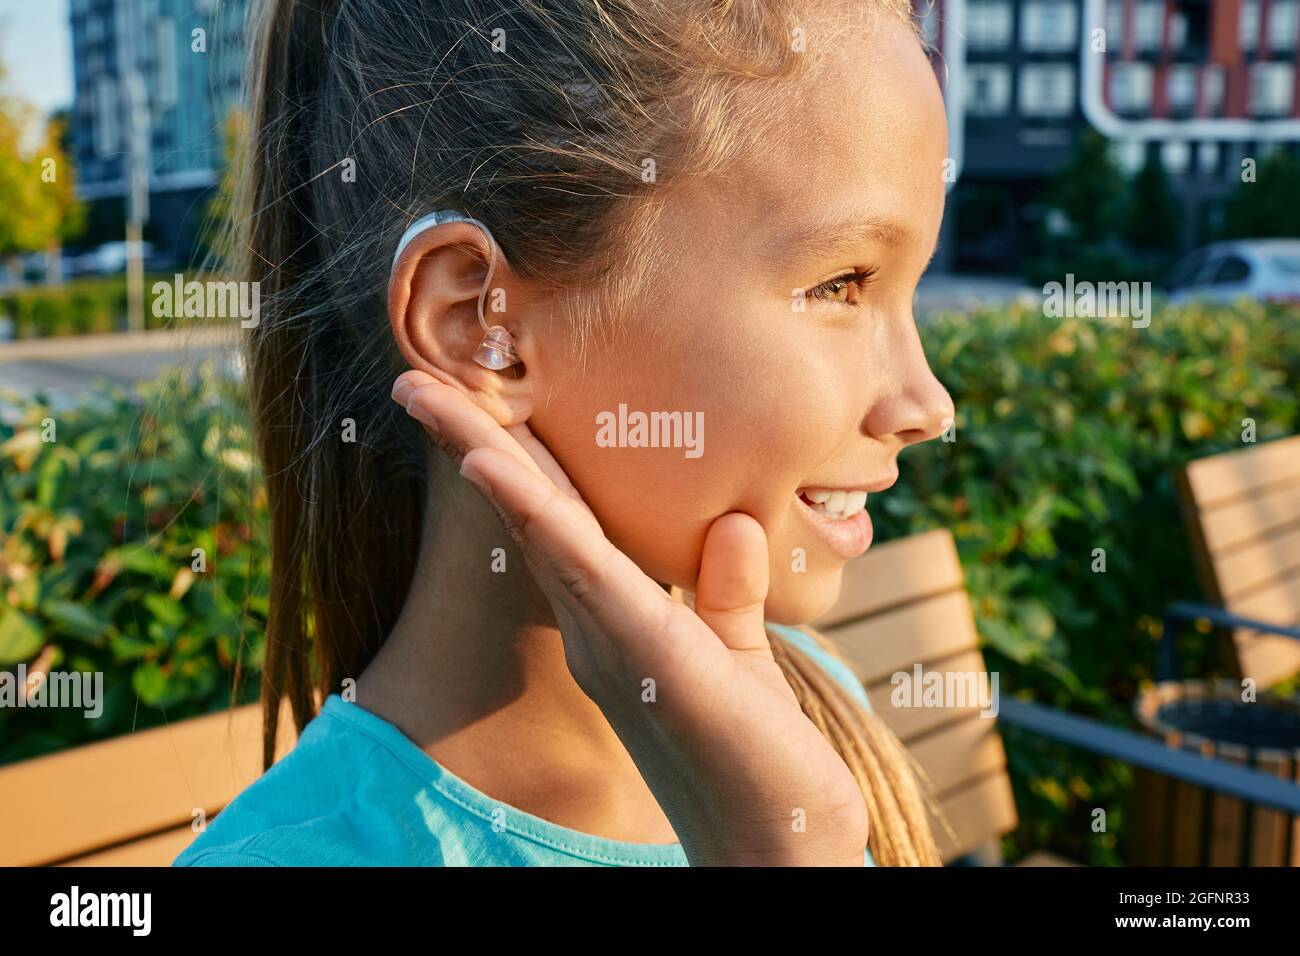 Lächelndes weibliches Kind mit einem Hörgerät hinter dem Ohr hält die Hand  nahe am Ohr, um im Freien zu hören und ein Leben lang zu leben  Stockfotografie - Alamy